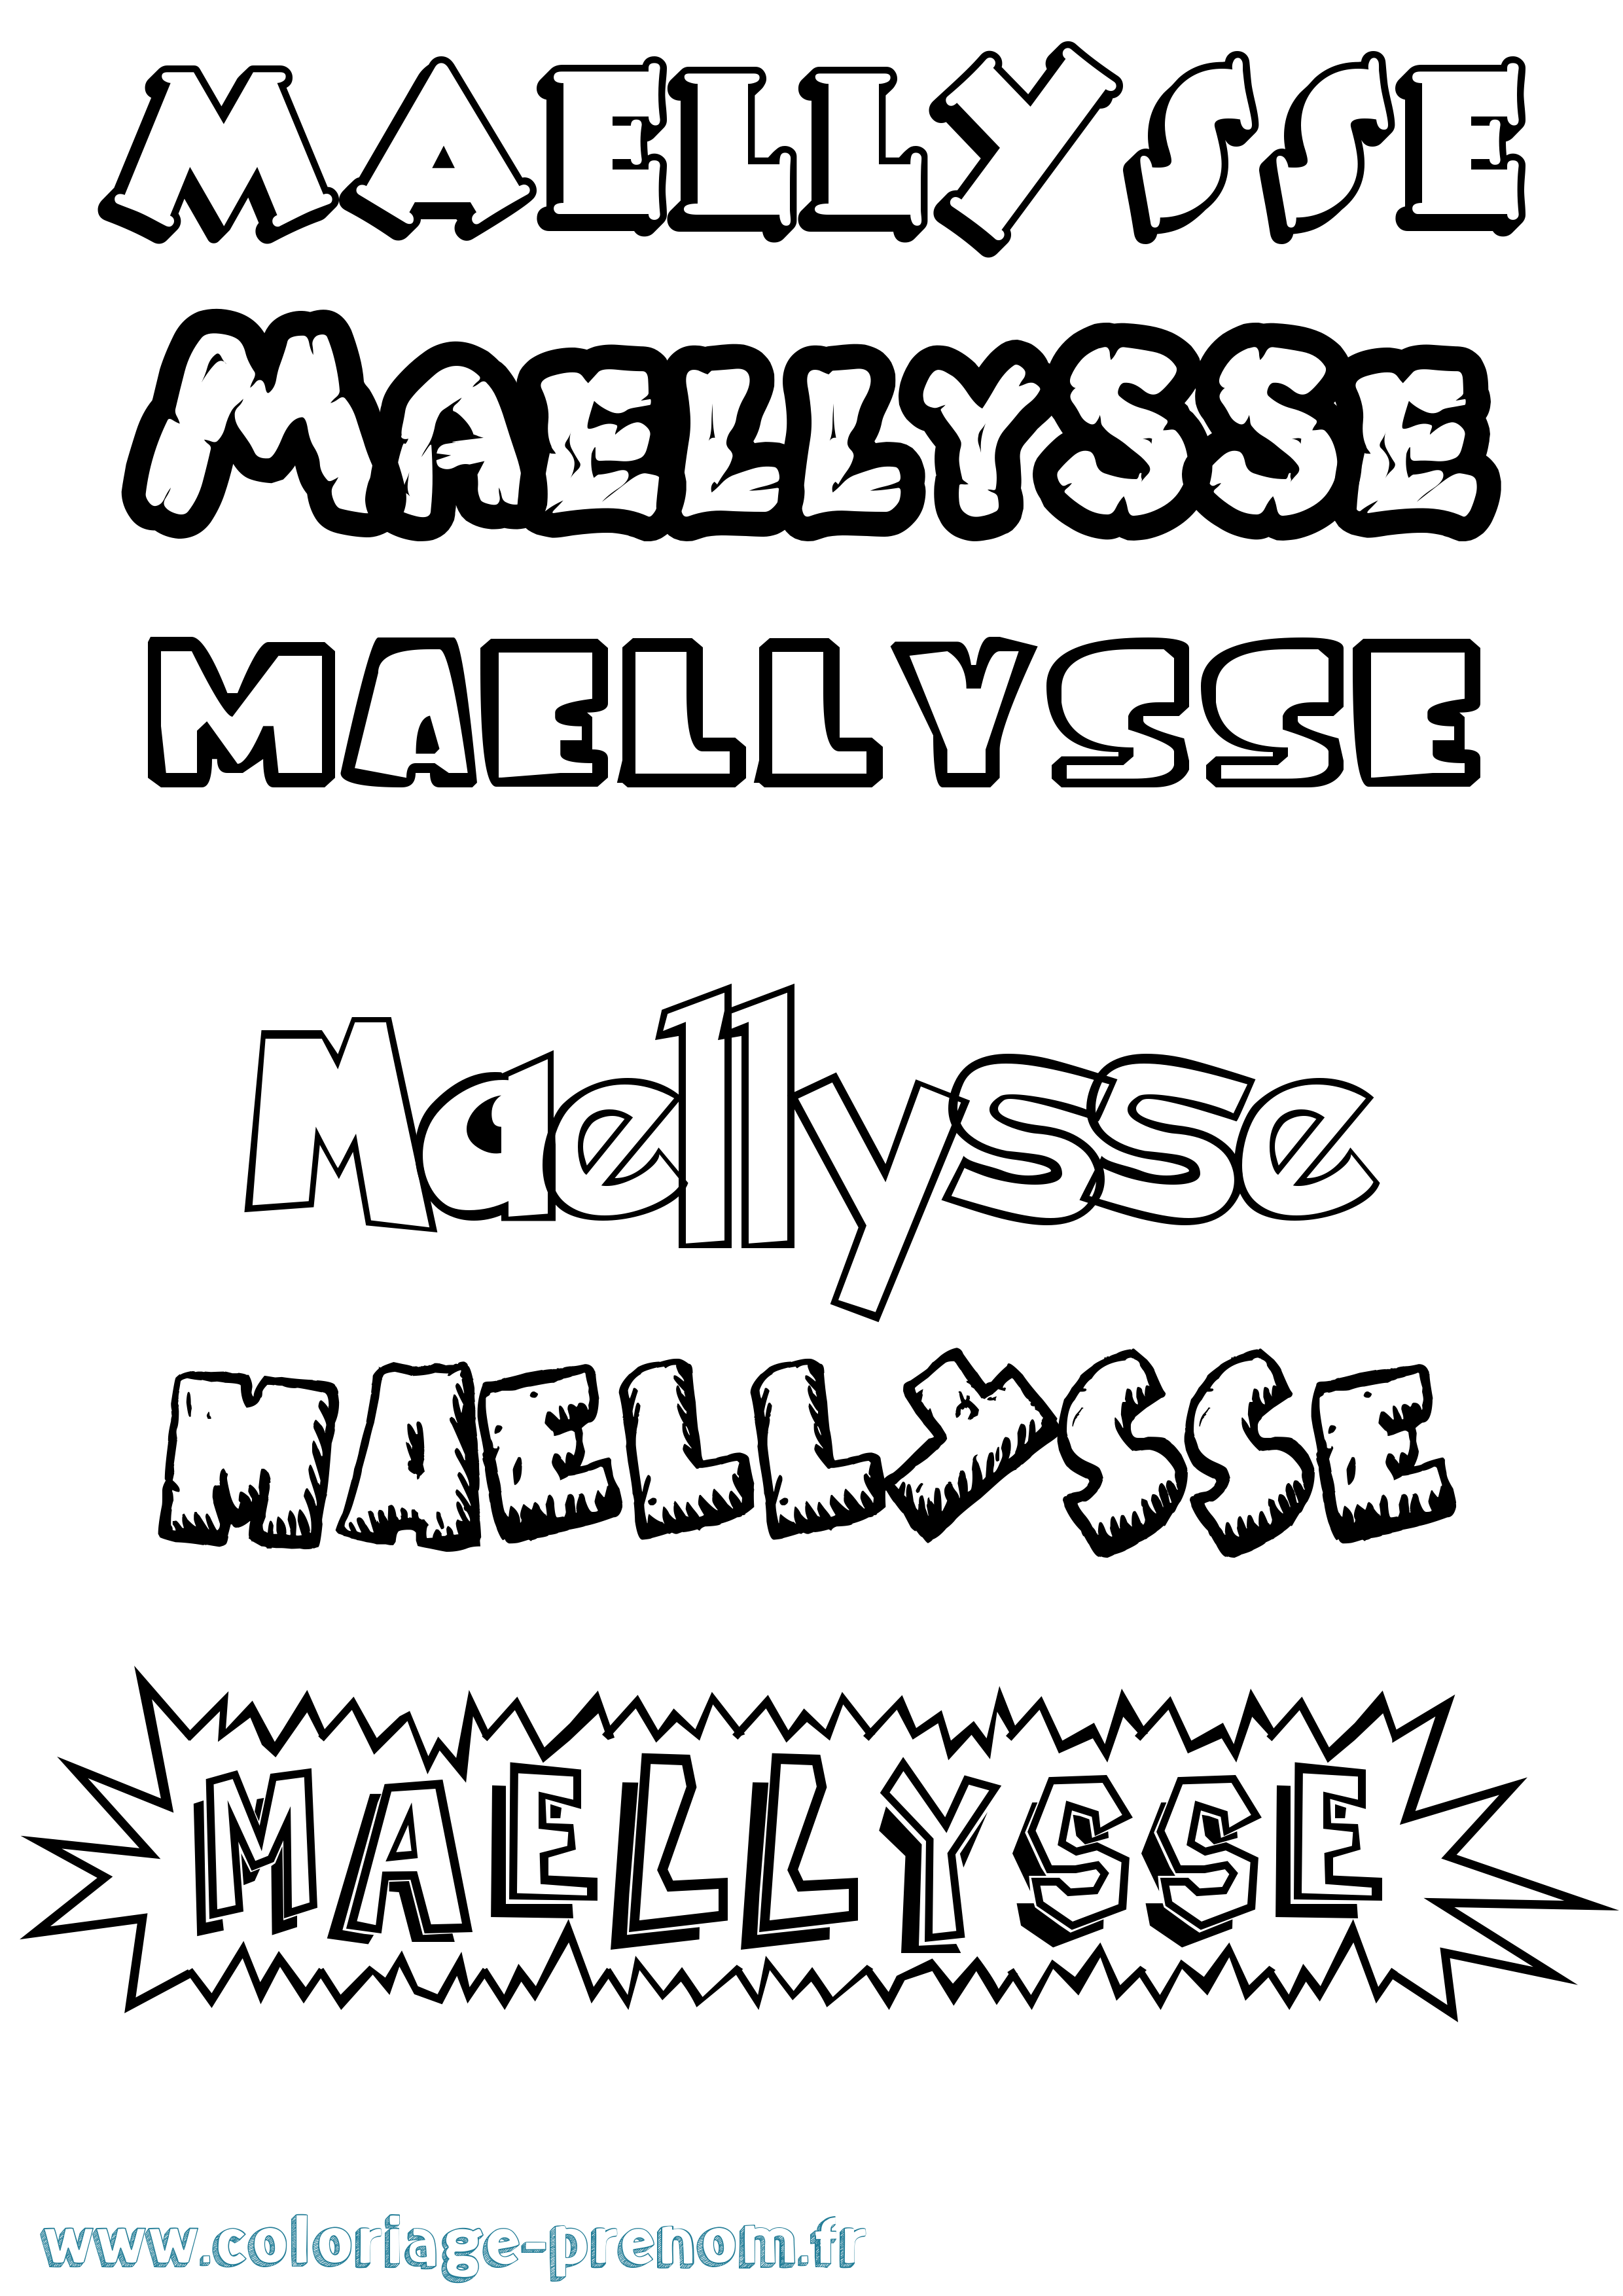 Coloriage prénom Maellysse Dessin Animé